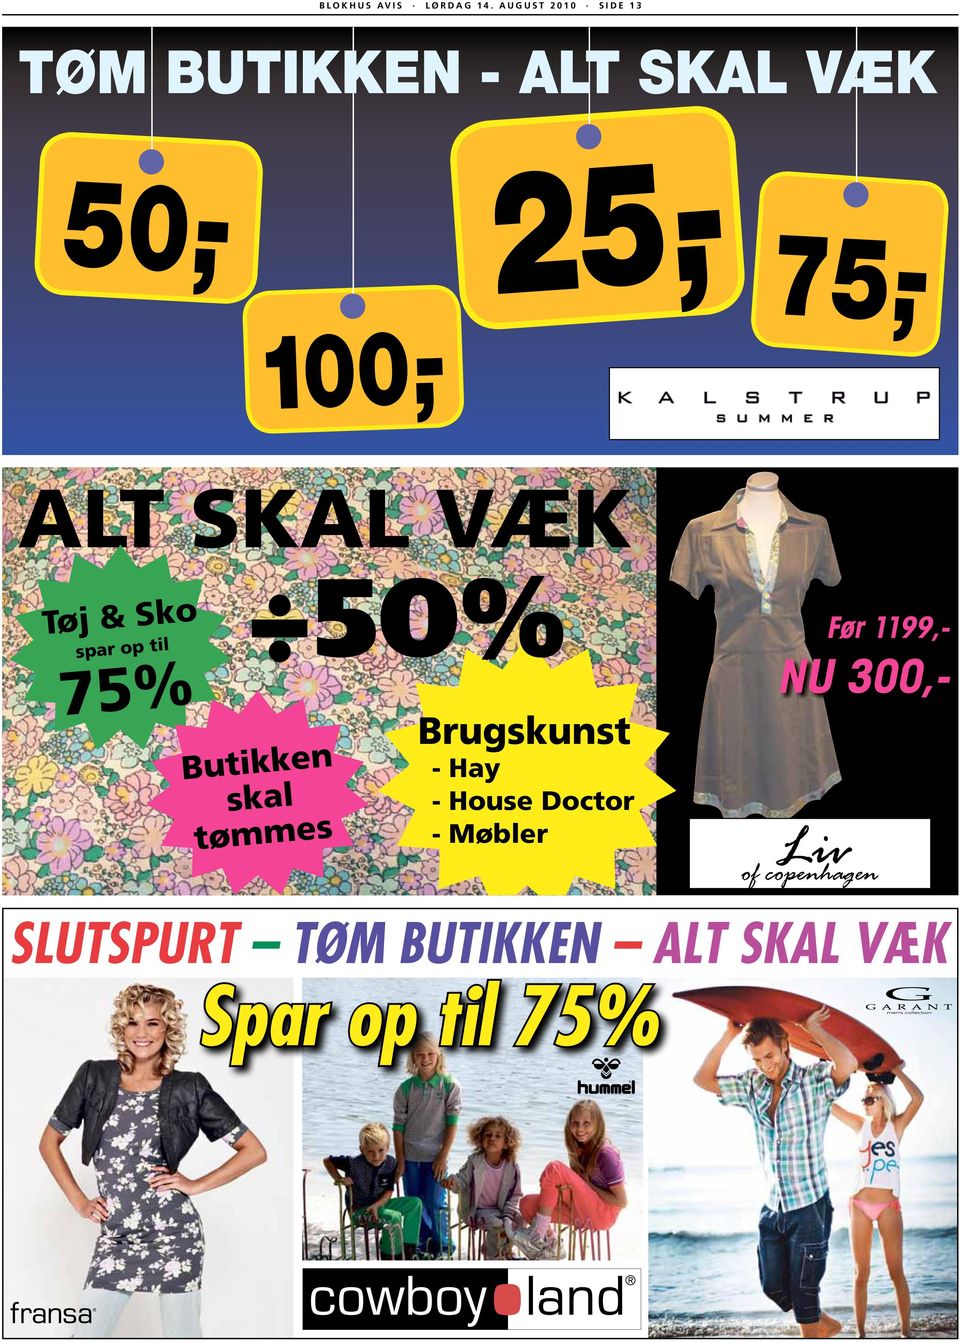 75,- ALT SKAL VÆK Tøj & Sko spar op til 75% 50% Butikken skal